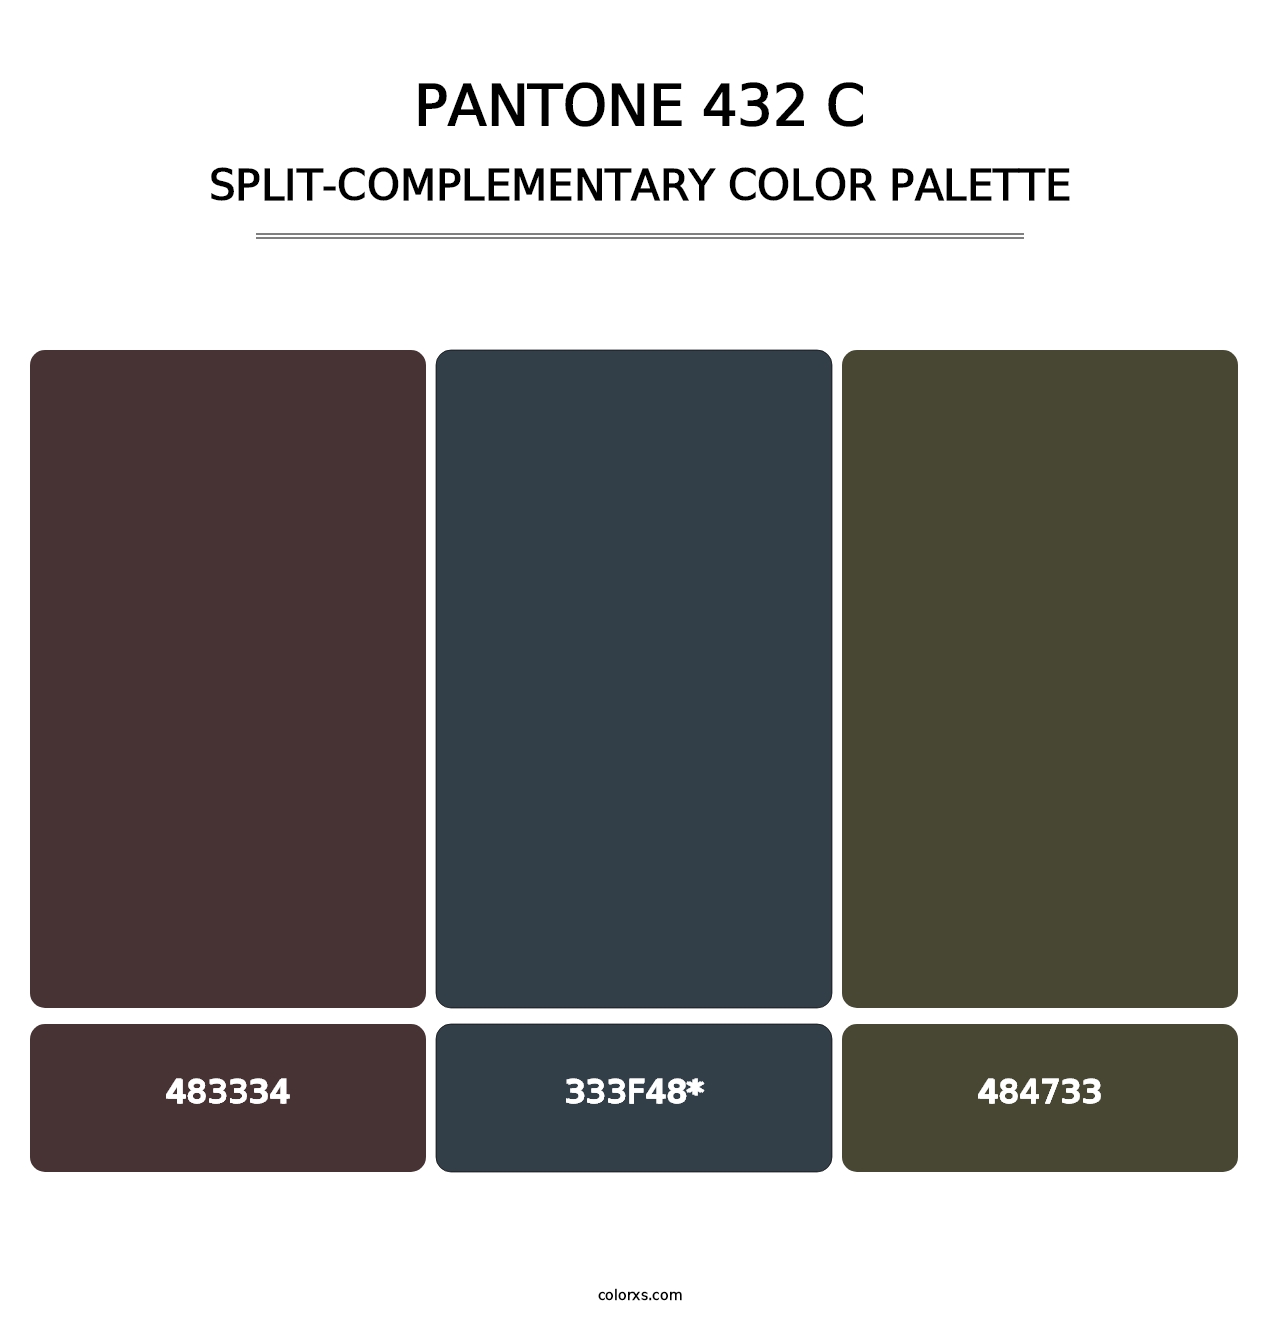 PANTONE 432 C - Split-Complementary Color Palette